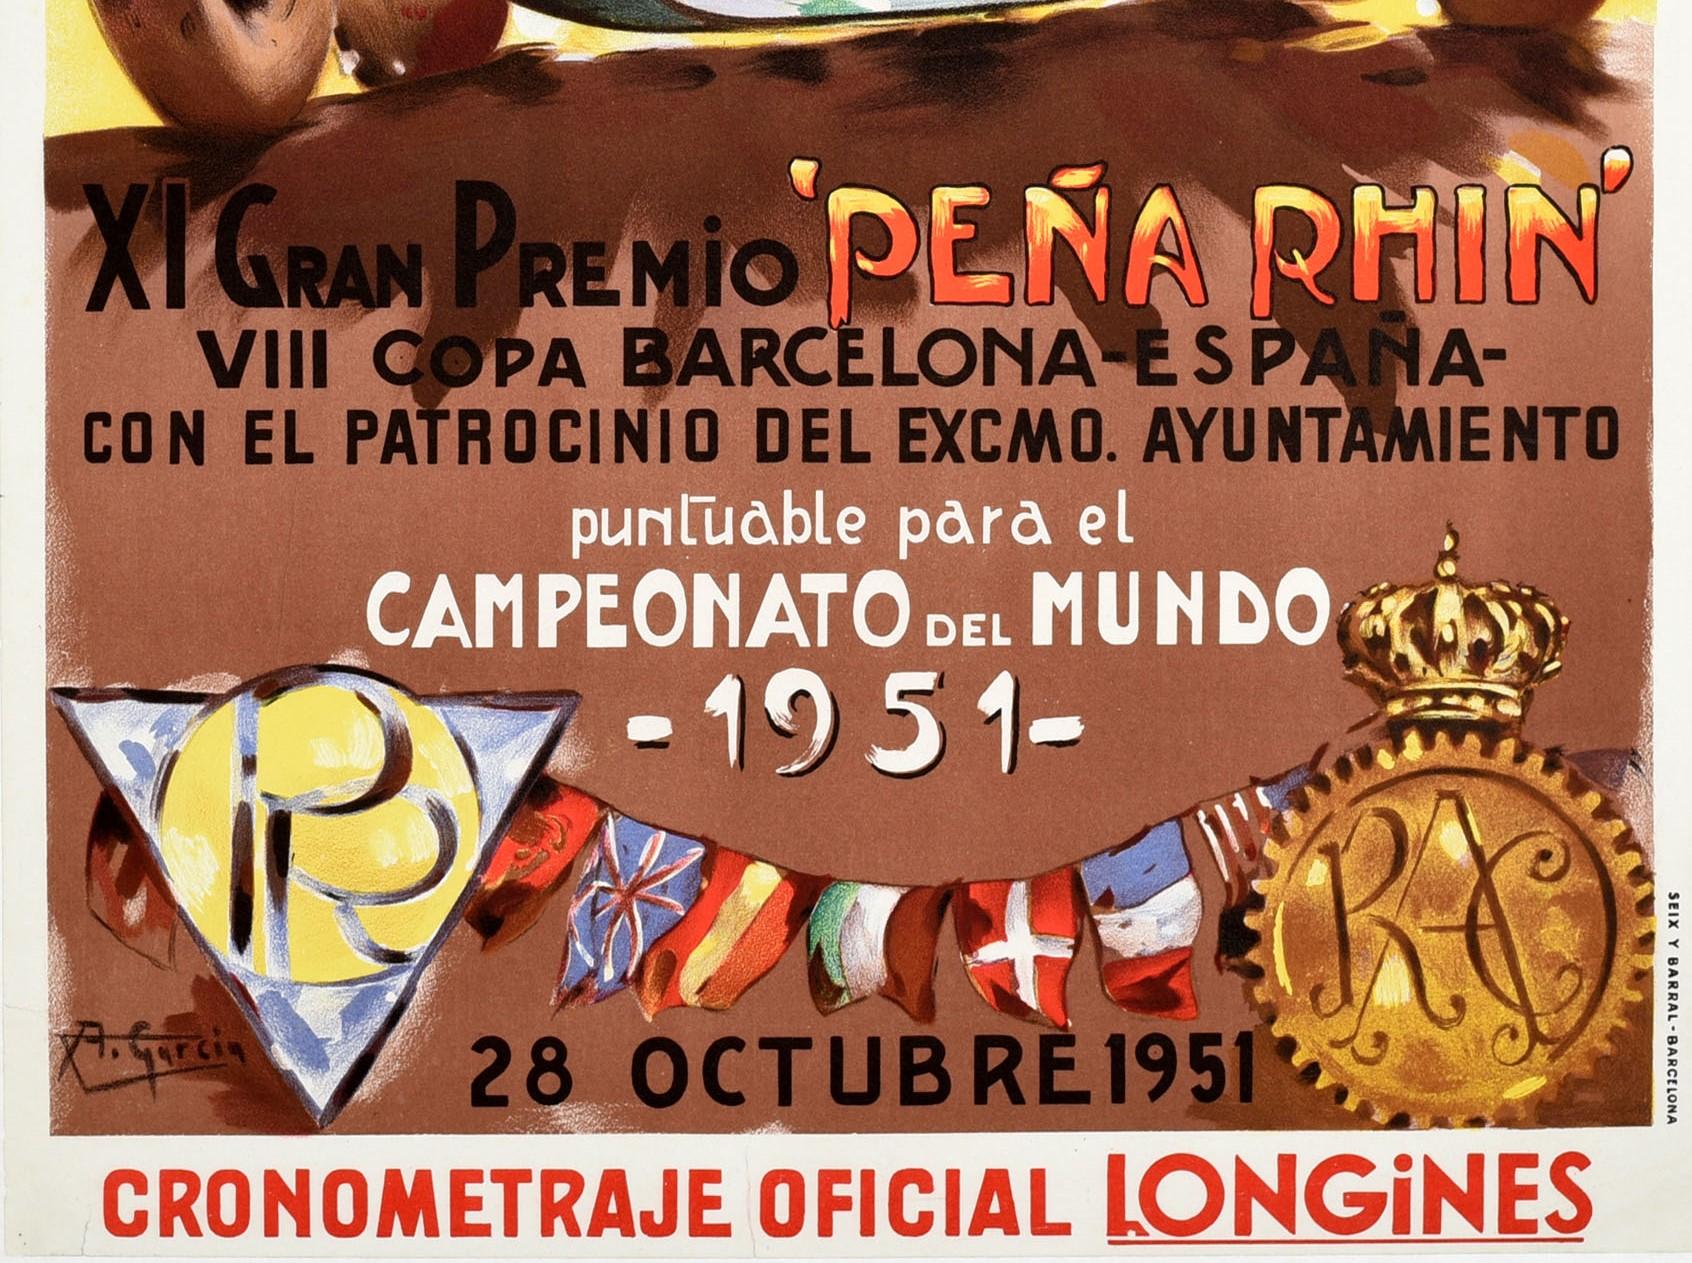 Original vintage Formel Eins GP Motorsport Plakat für die Weltmeisterschaft spanischen Grand Prix Pedralbes Circuit / Gran Premio De Espana Circuito Pedralbes am 28. Oktober 1951 mit einem bunten und dynamischen F1-Autorennen Design eines